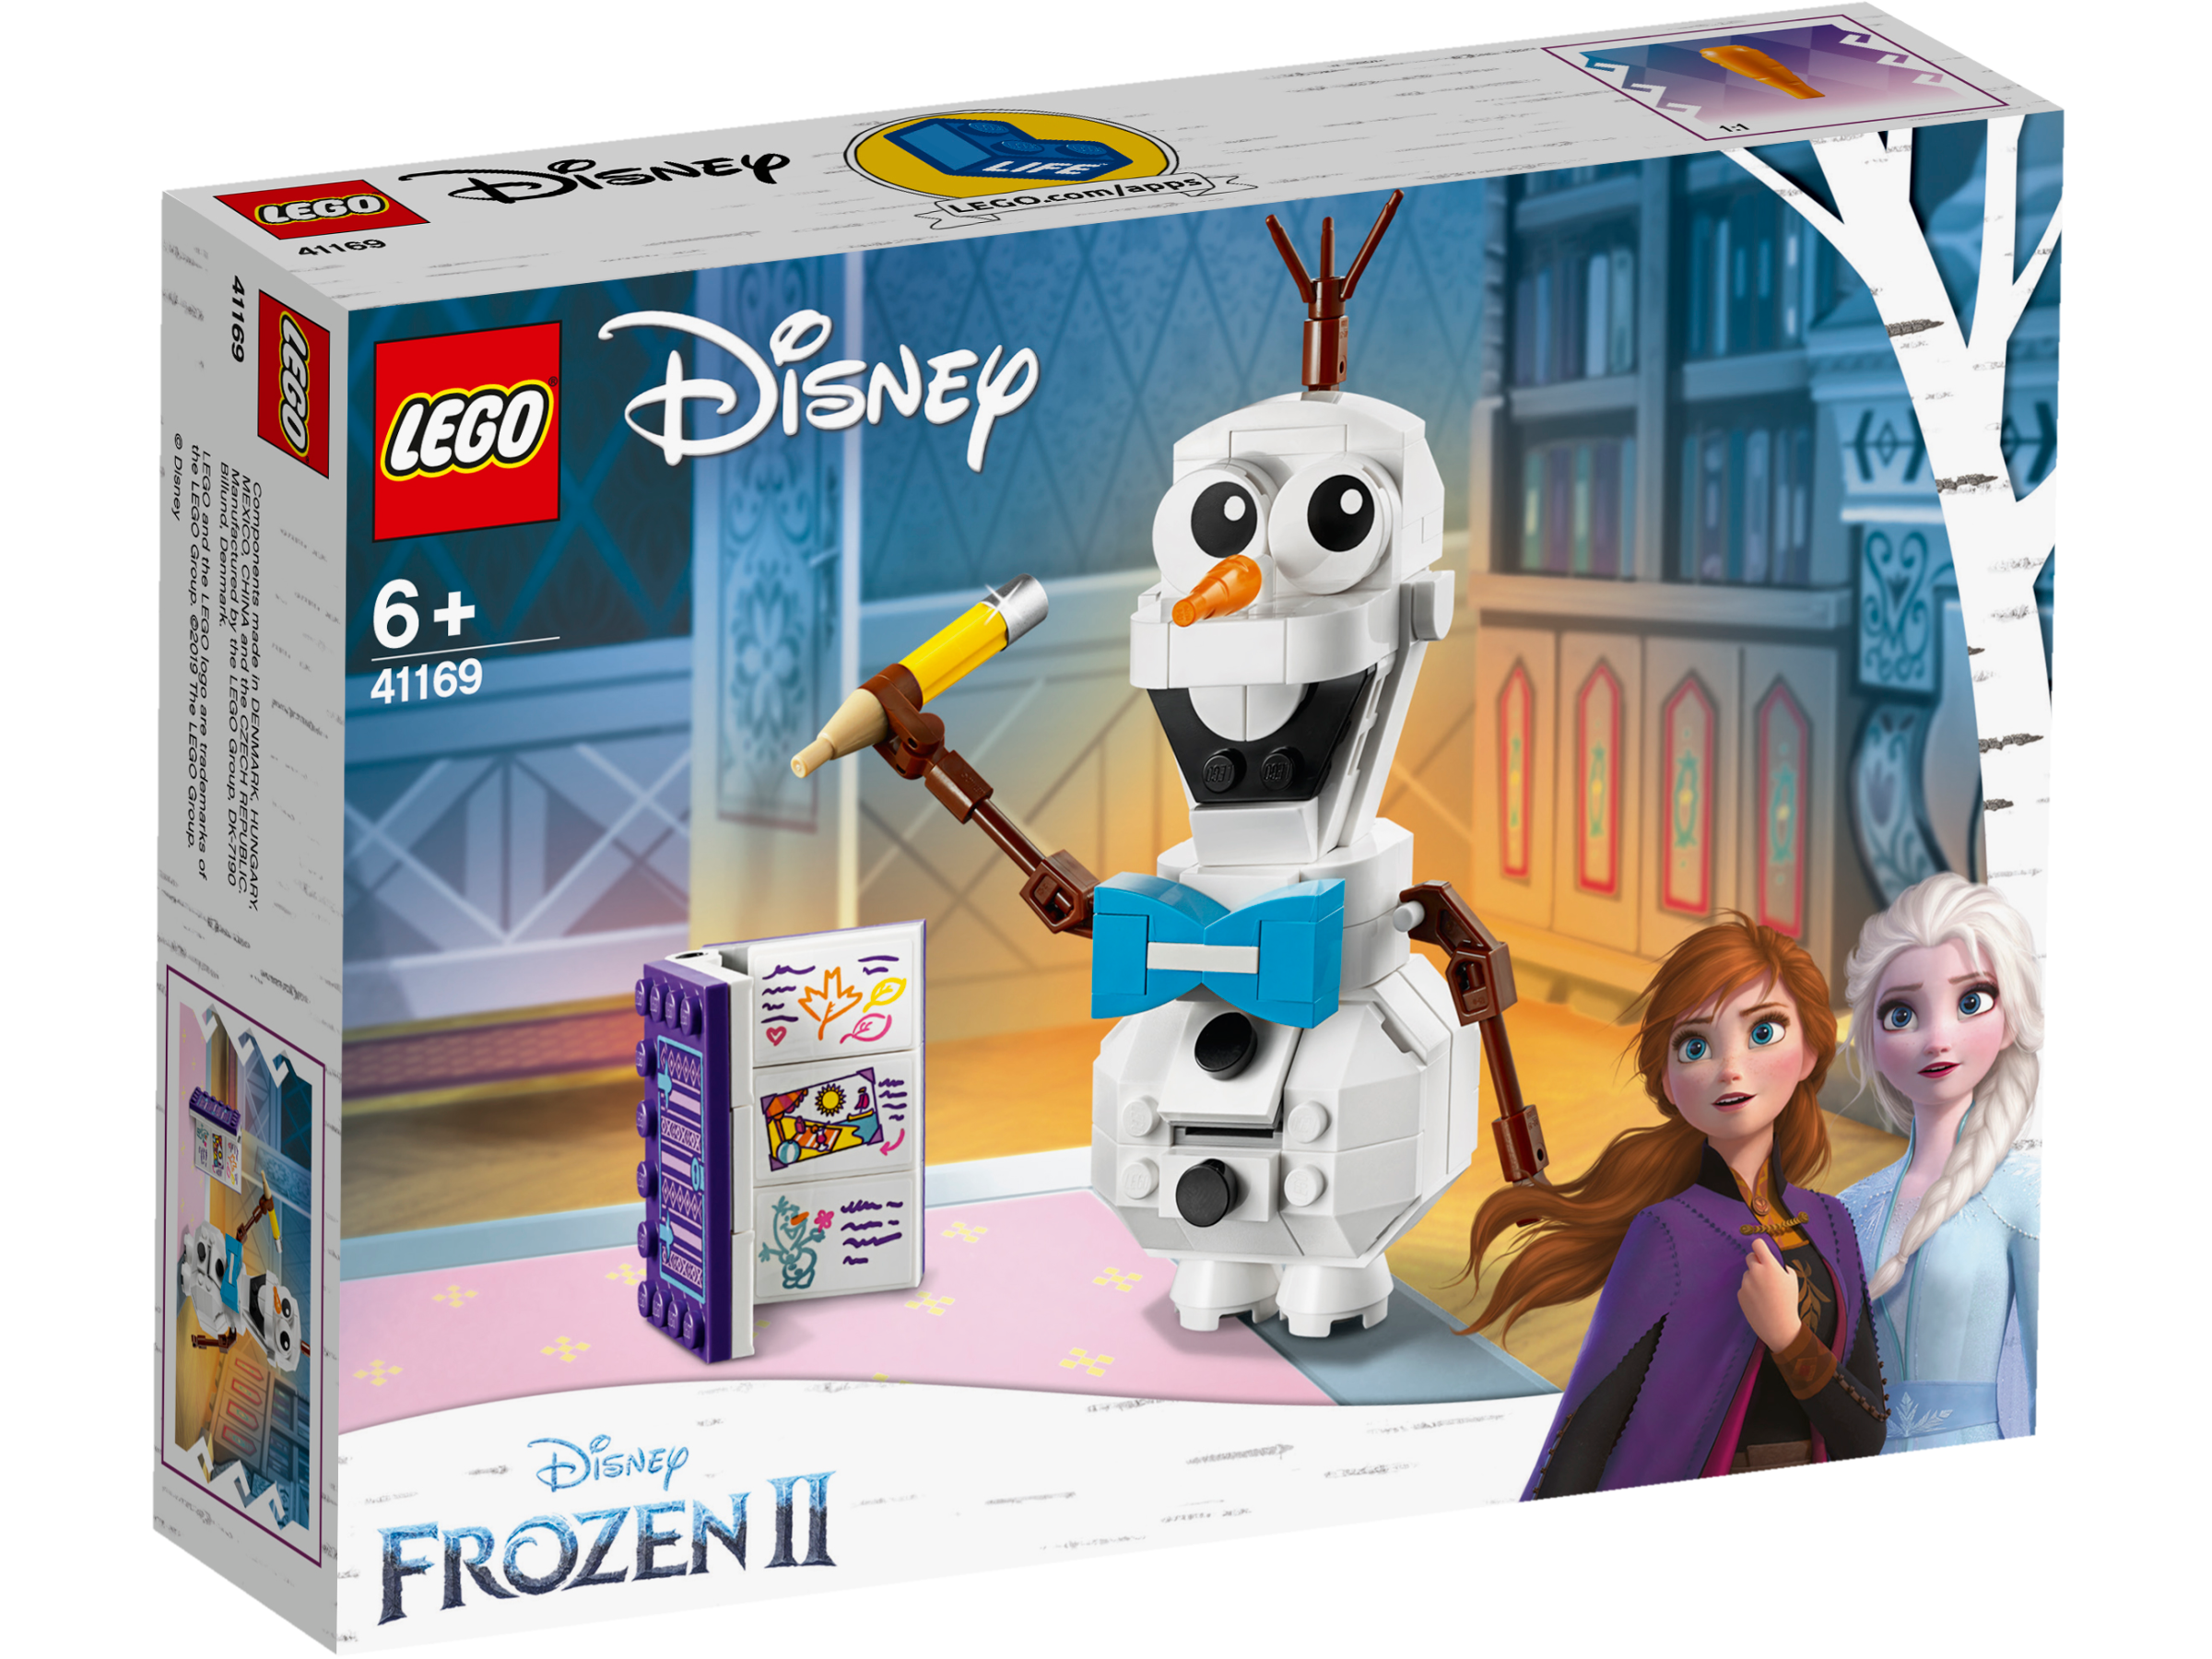 LEGO Disney Frozen - Olaf 41169